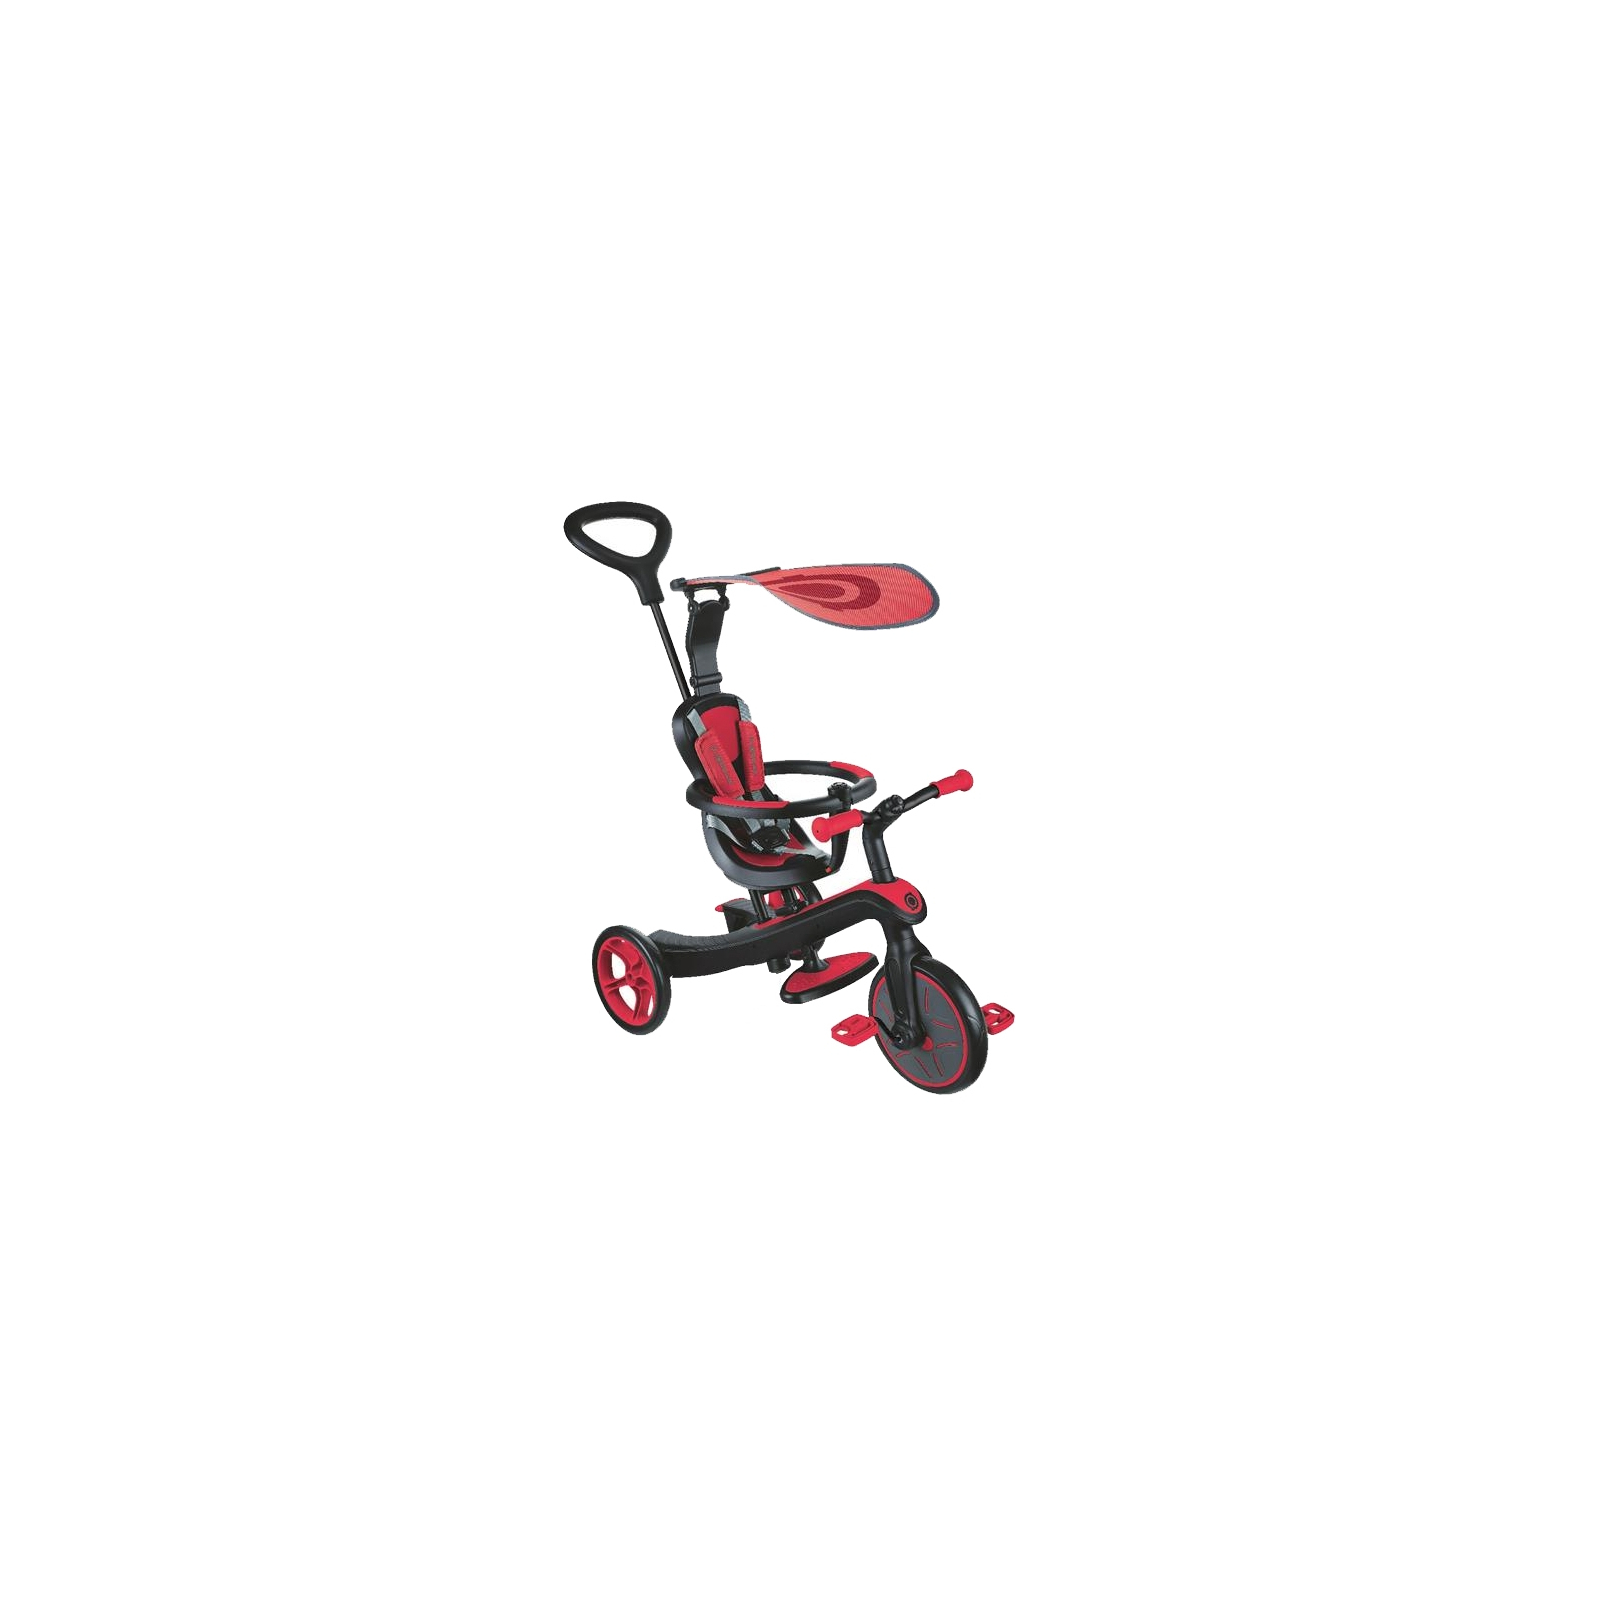 Дитячий велосипед Globber EXPLORER TRIKE 4в1 червоний (632-102)